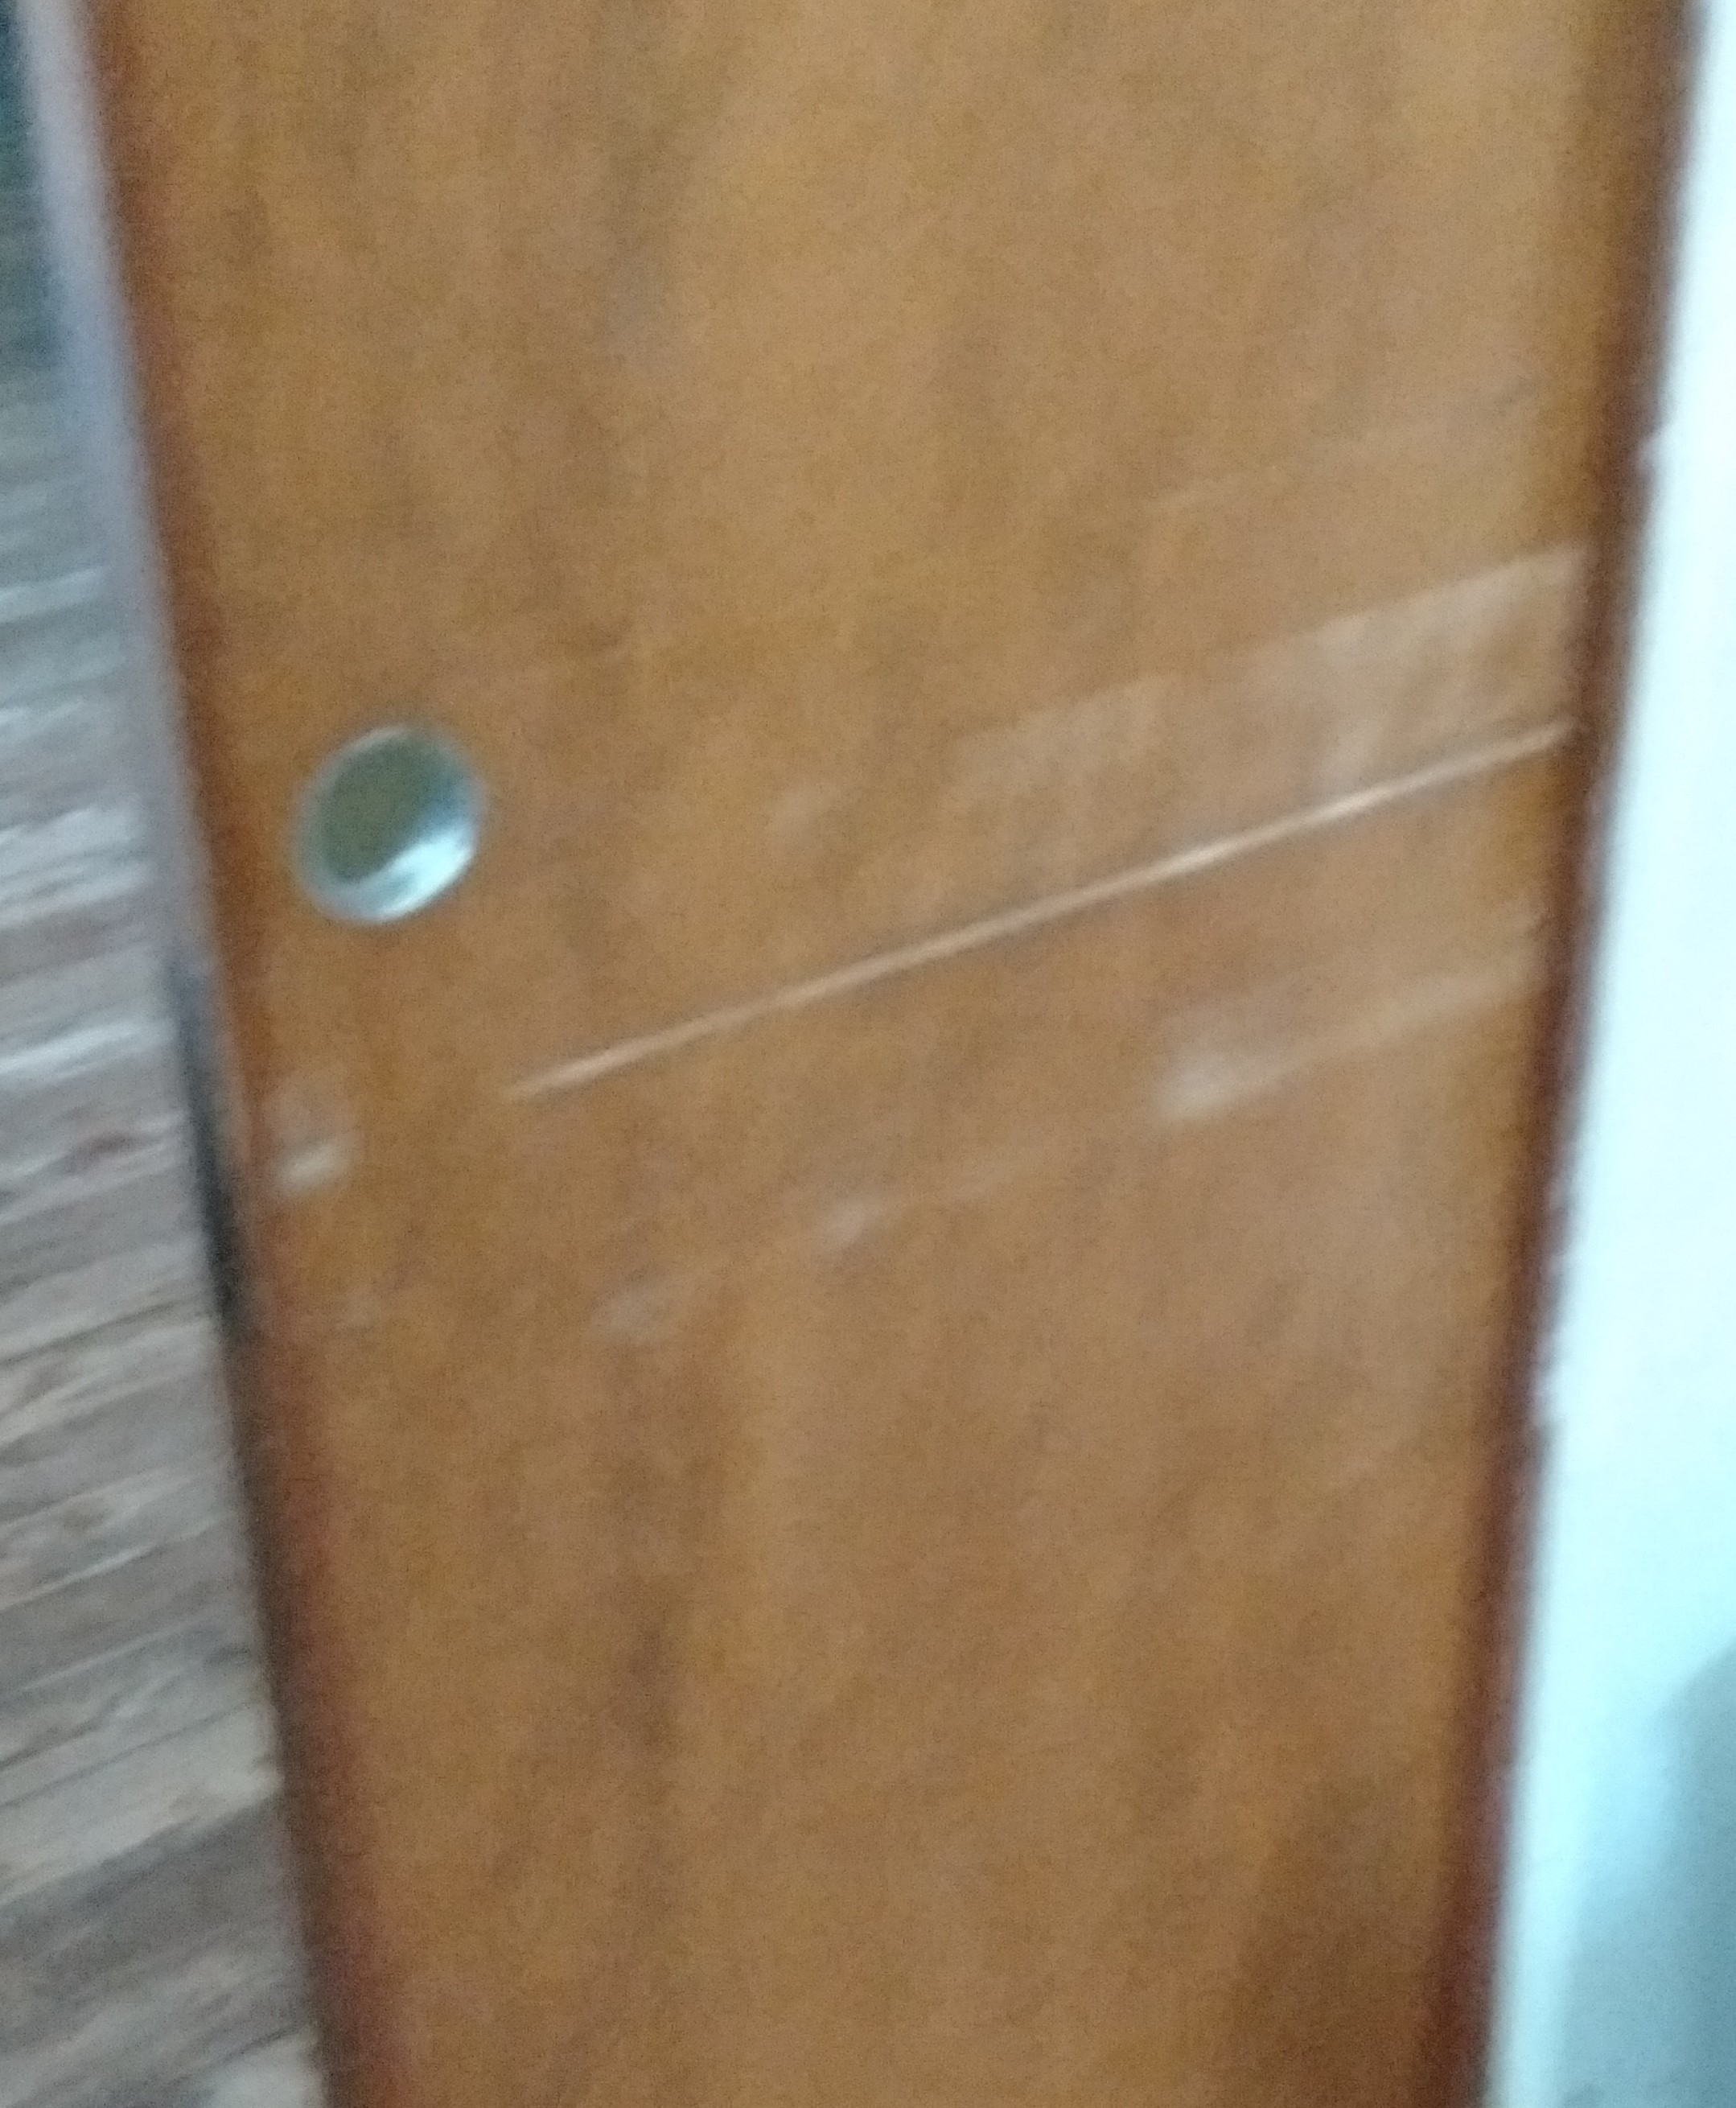 Pocket door into kitchen